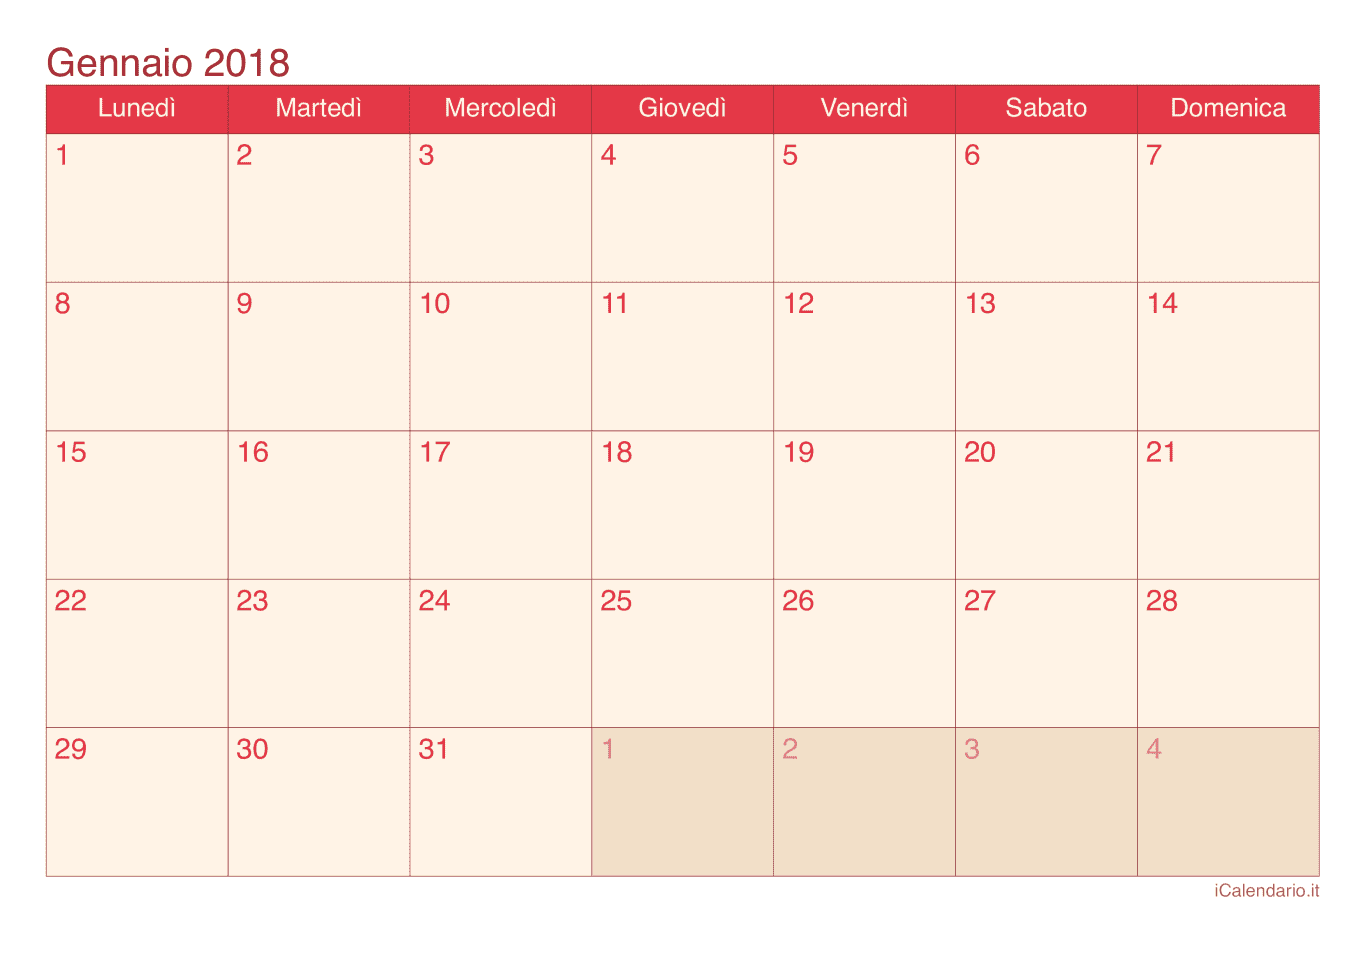 Calendario di gennaio 2018 - Cherry